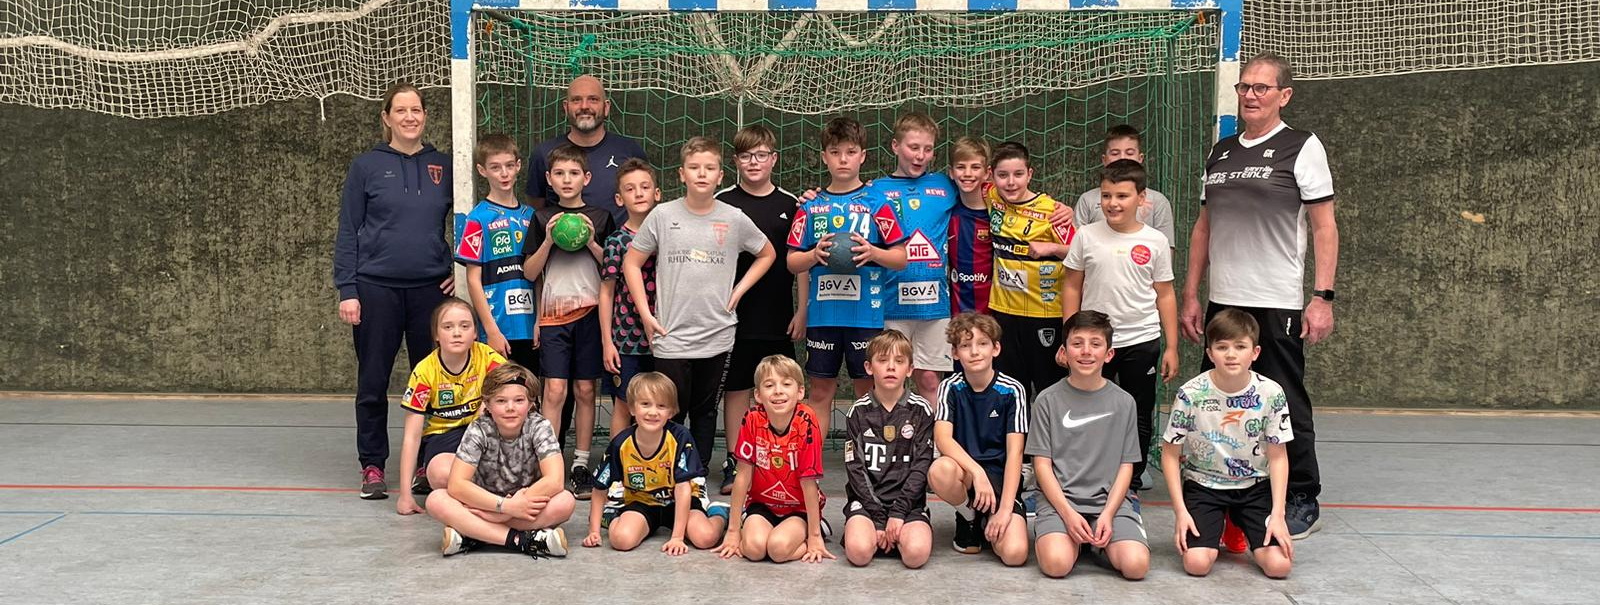 Oster-Handballworkshop für die Jahrgänge 2012 und 2013